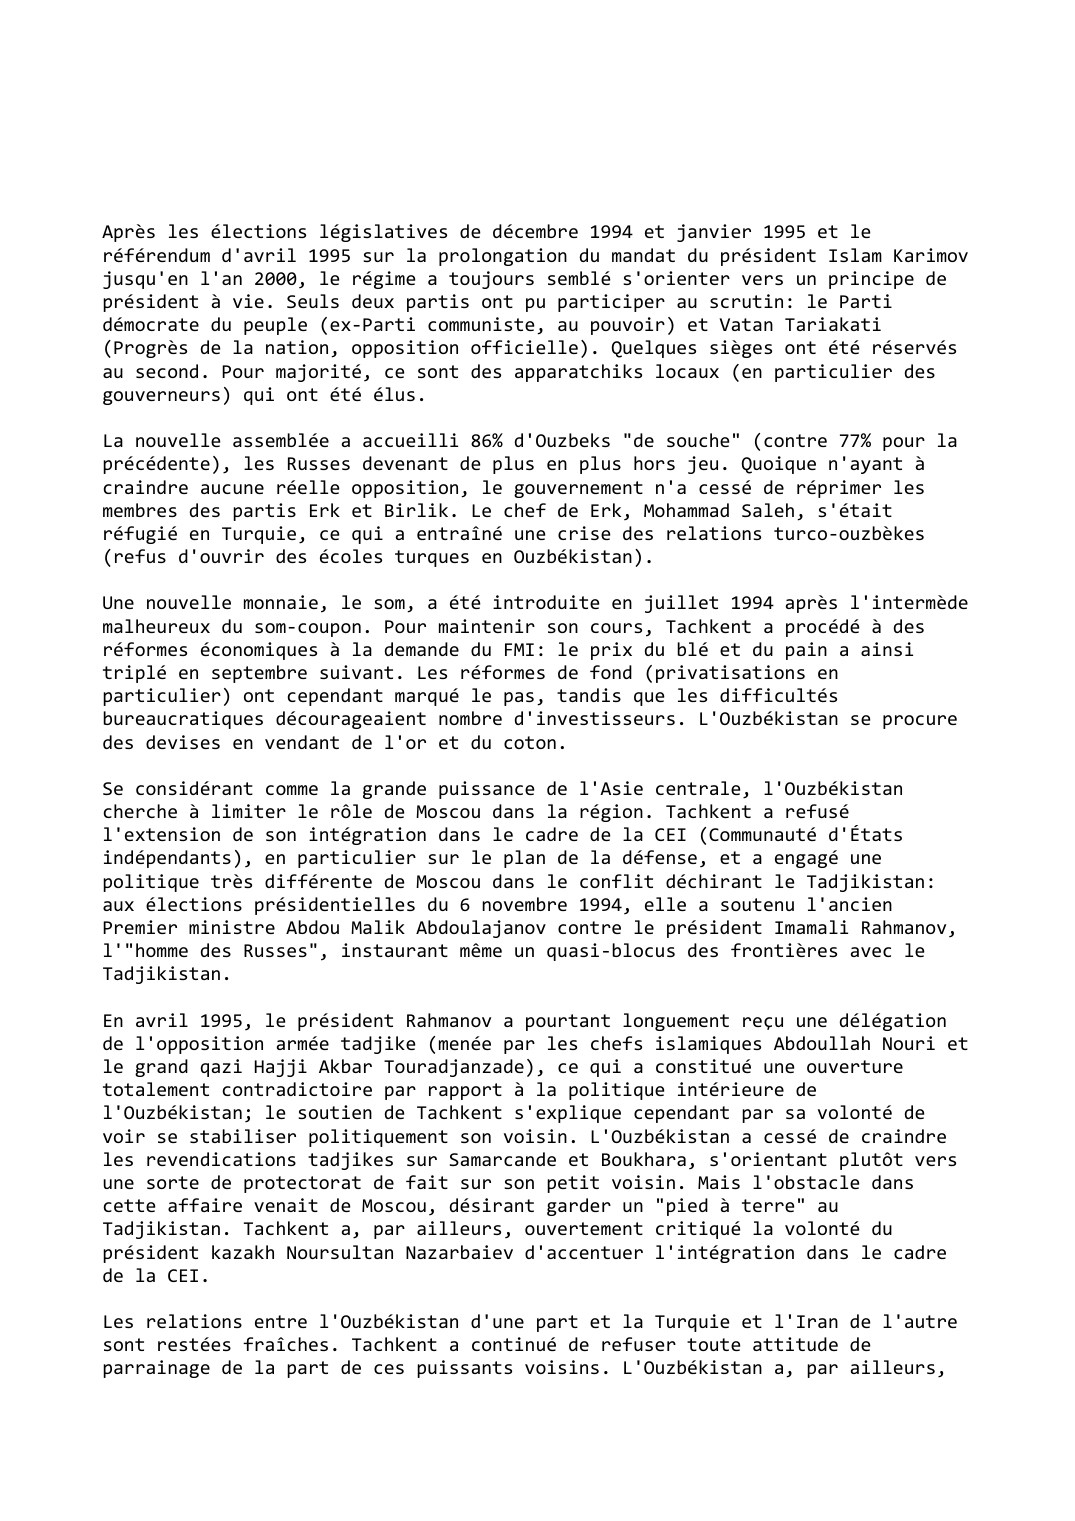 Prévisualisation du document Ouzbékistan (1994-1995)